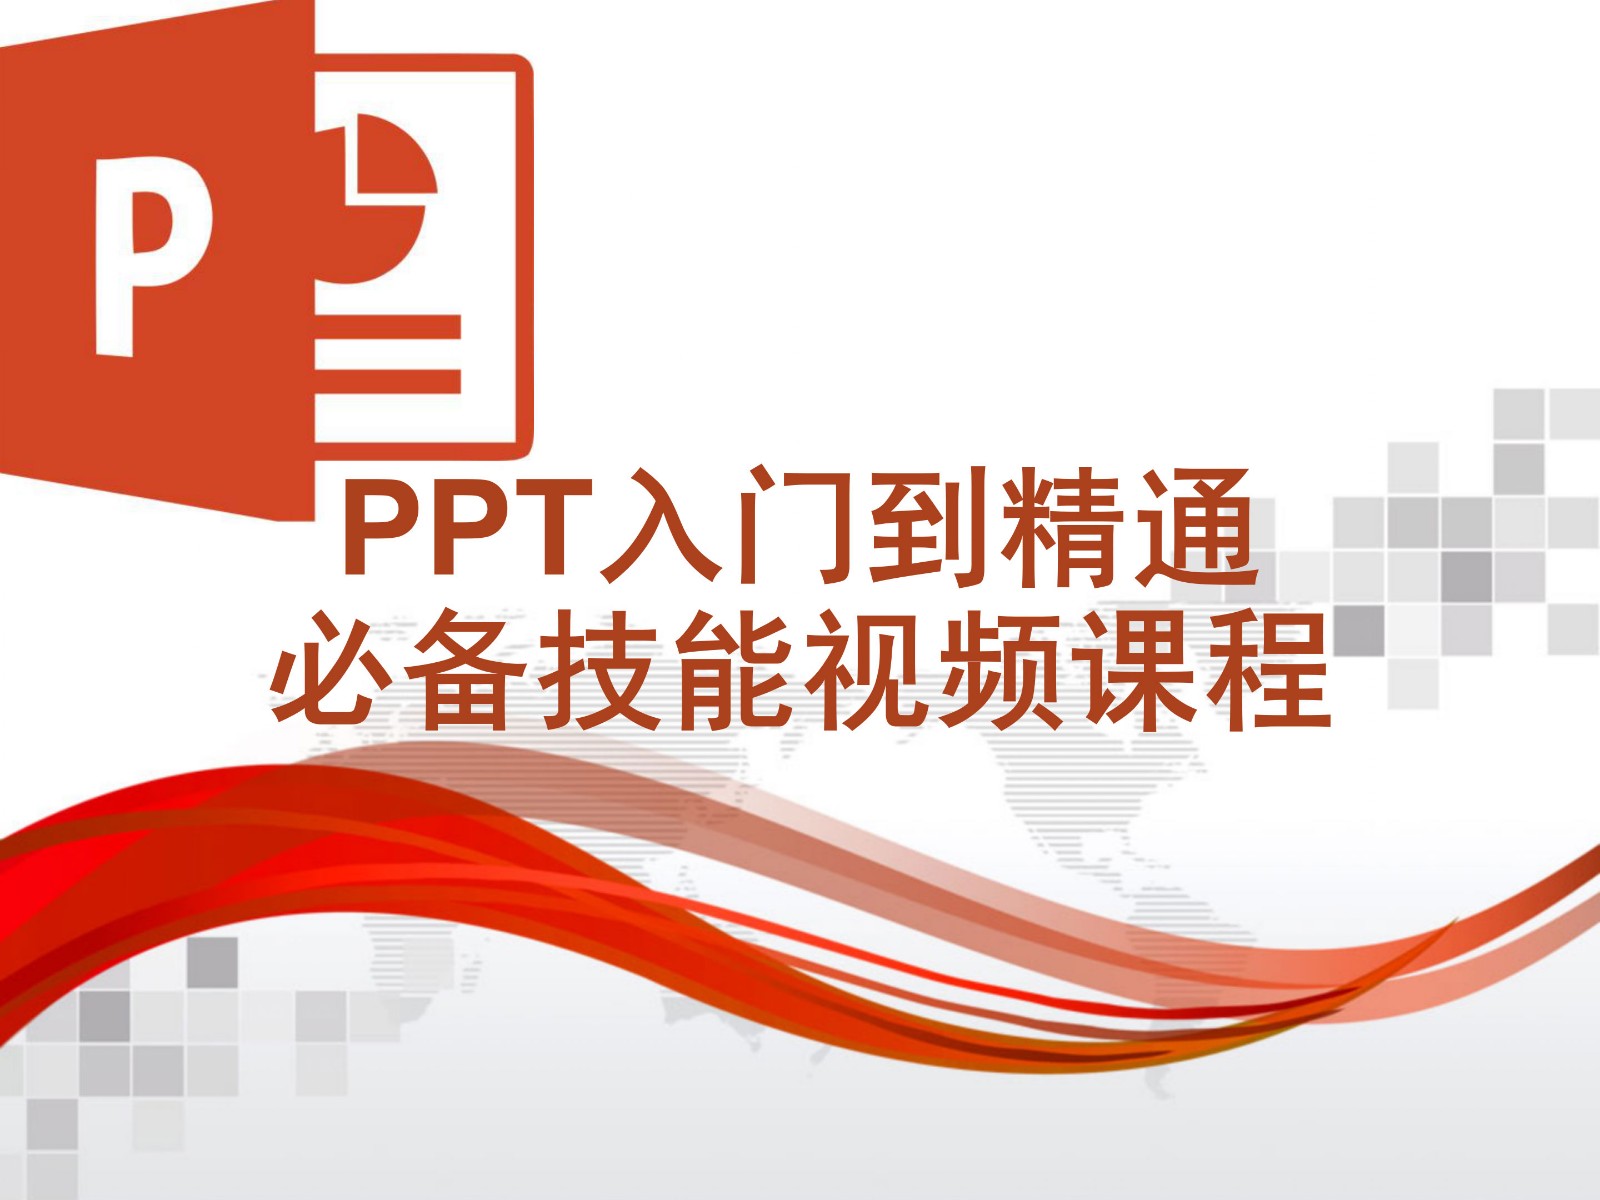 PPT基础与提升必备技能视频课程